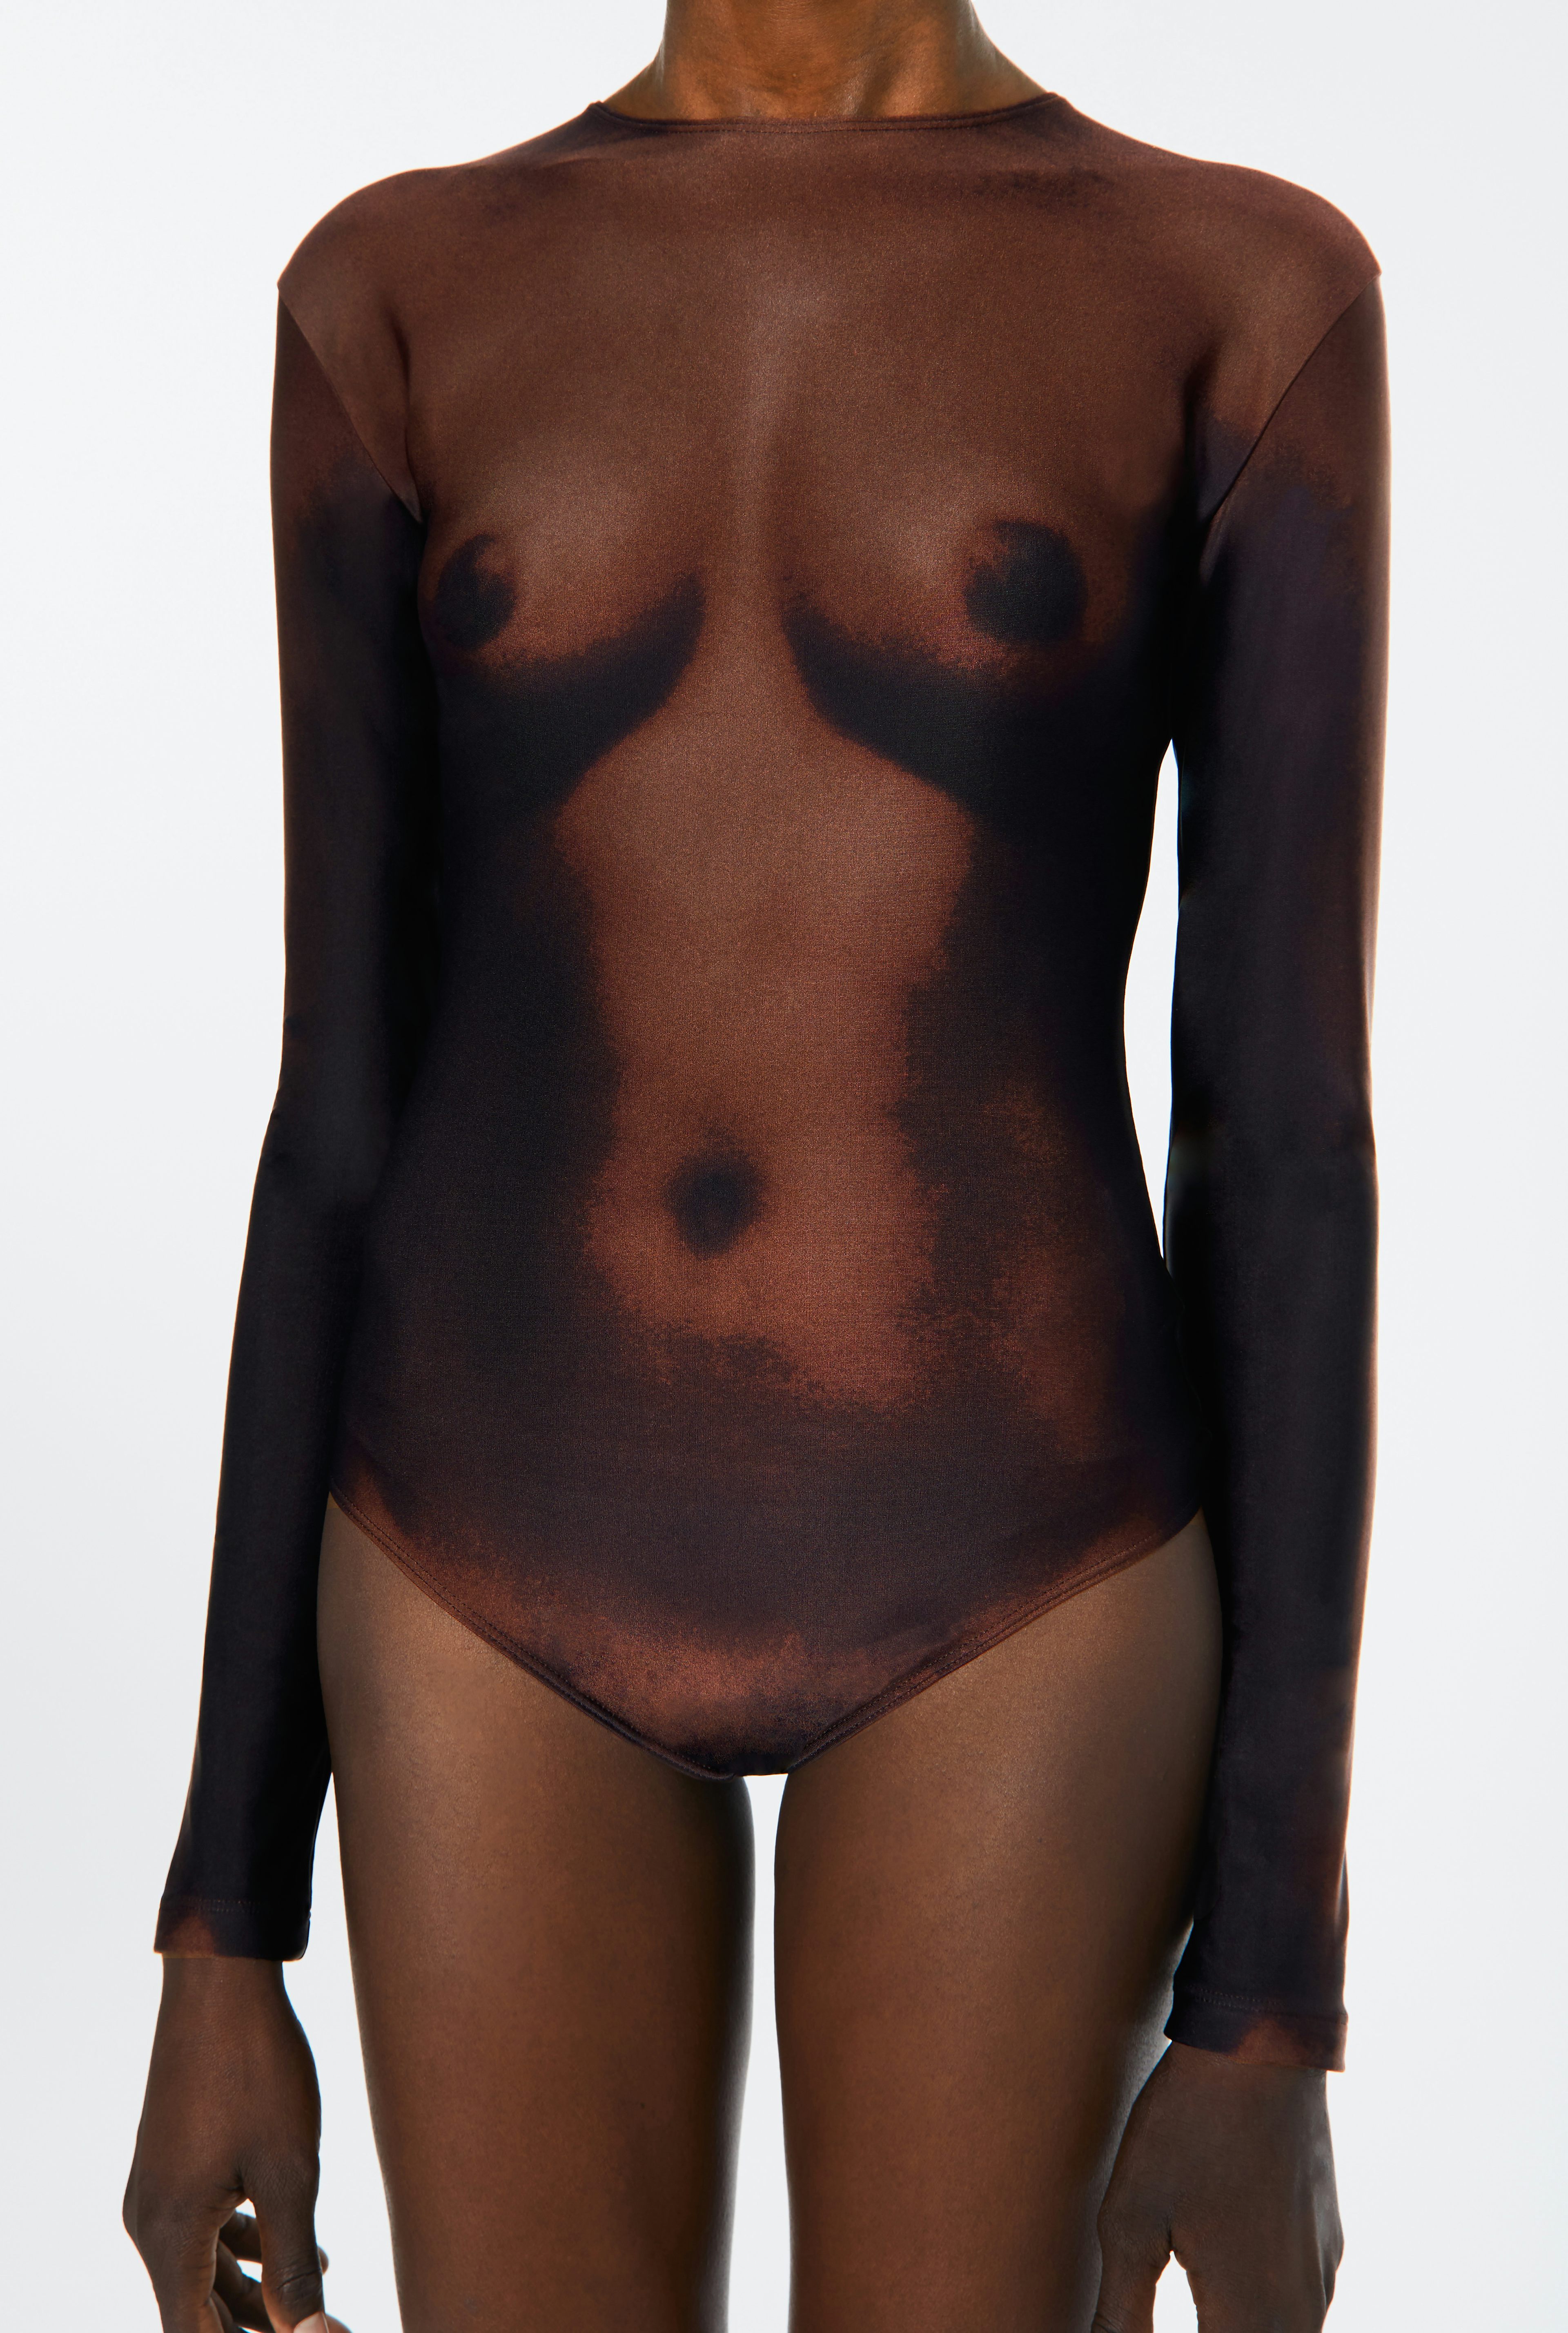 The Naked Bodysuit